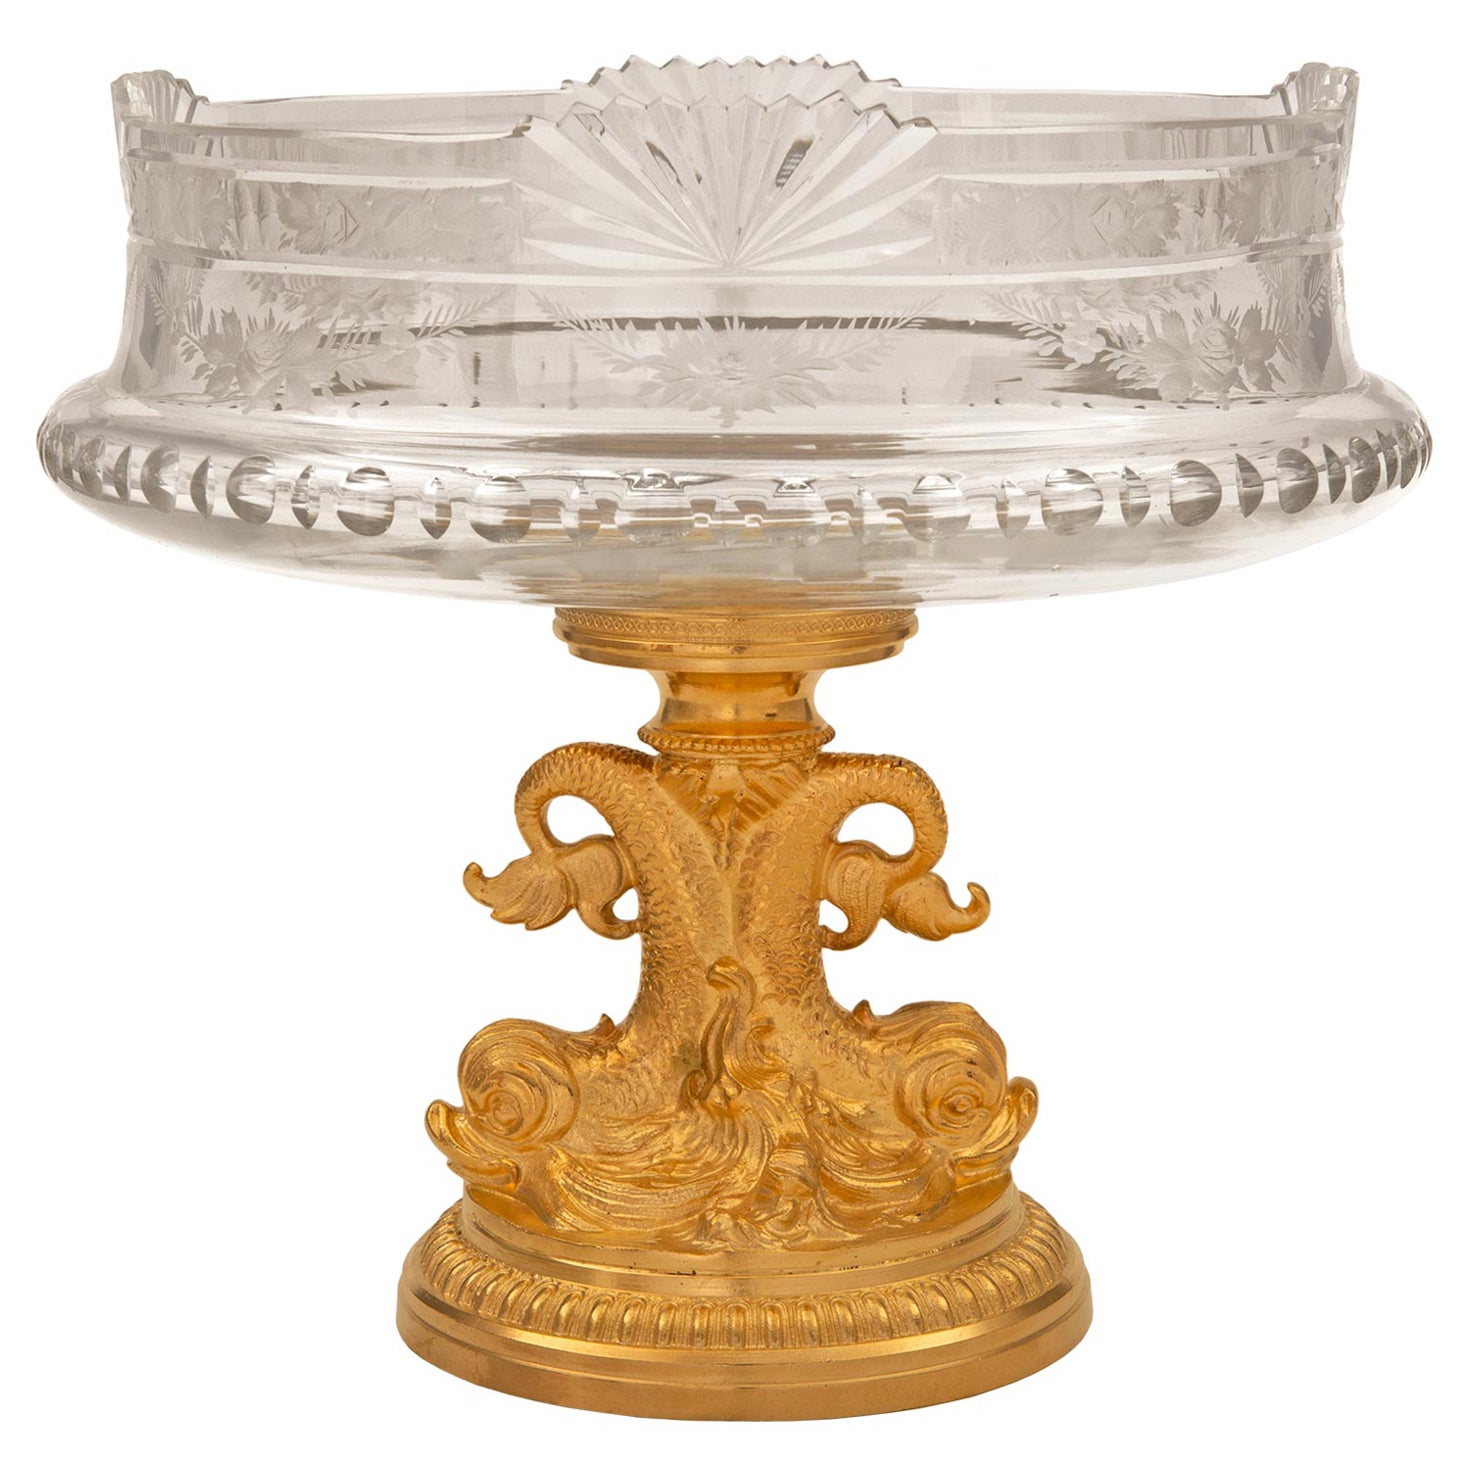 Franzsische Tafelaufsatz-Schale aus Goldbronze und Baccarat-Kristall im Louis-XVI-Stil des 19. Jahrhunderts